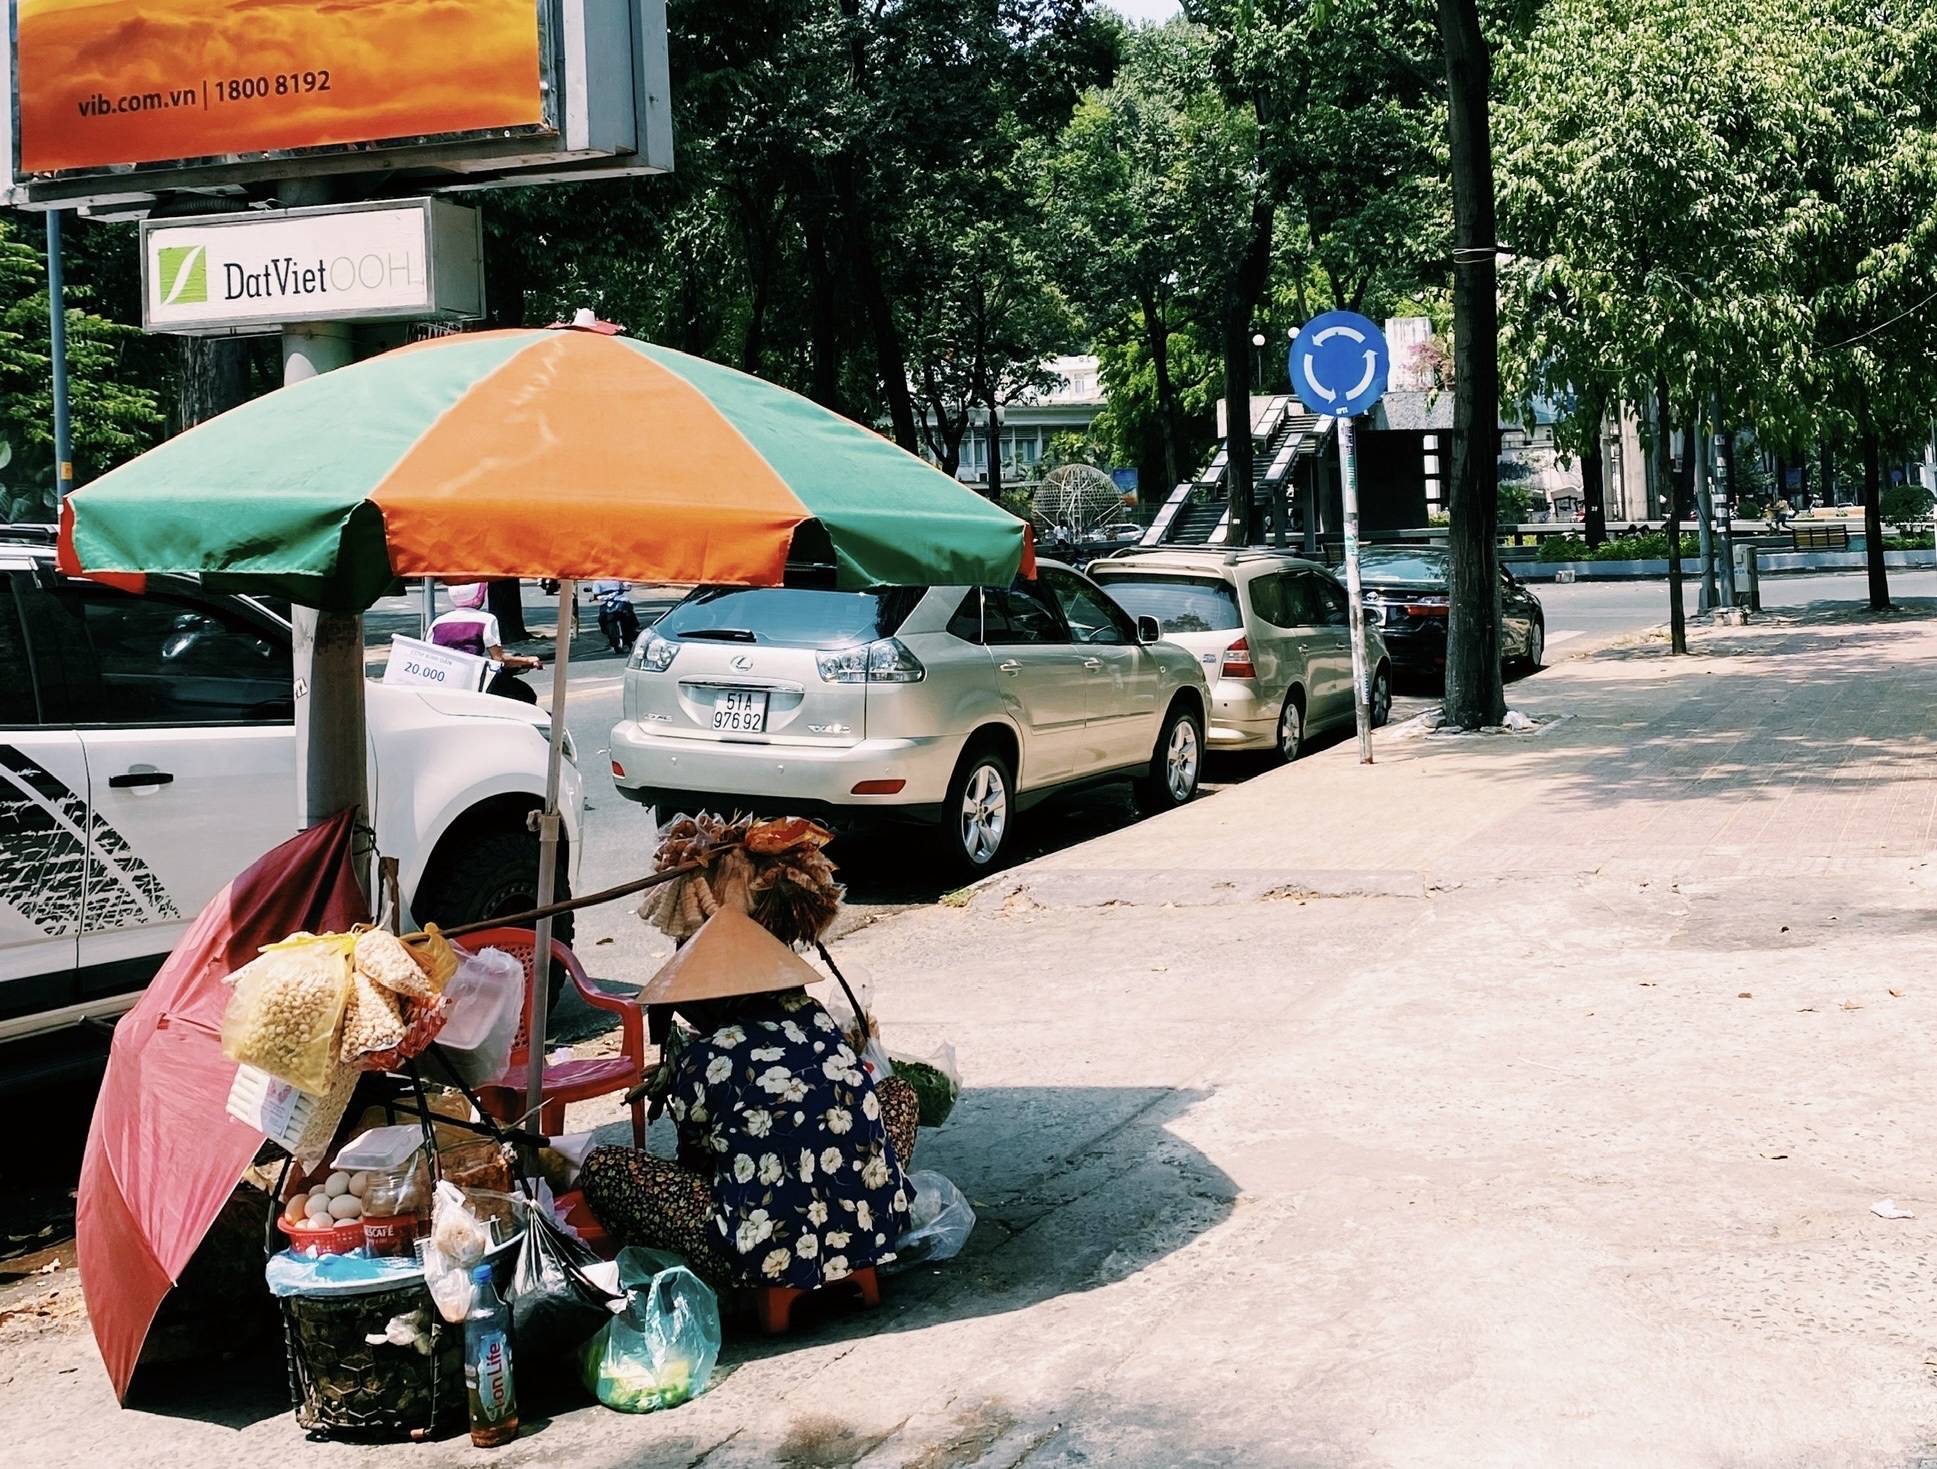 Sài Gòn - thành phố của những người phụ nữ không chịu ngồi yên (Ảnh: Kim Dung)